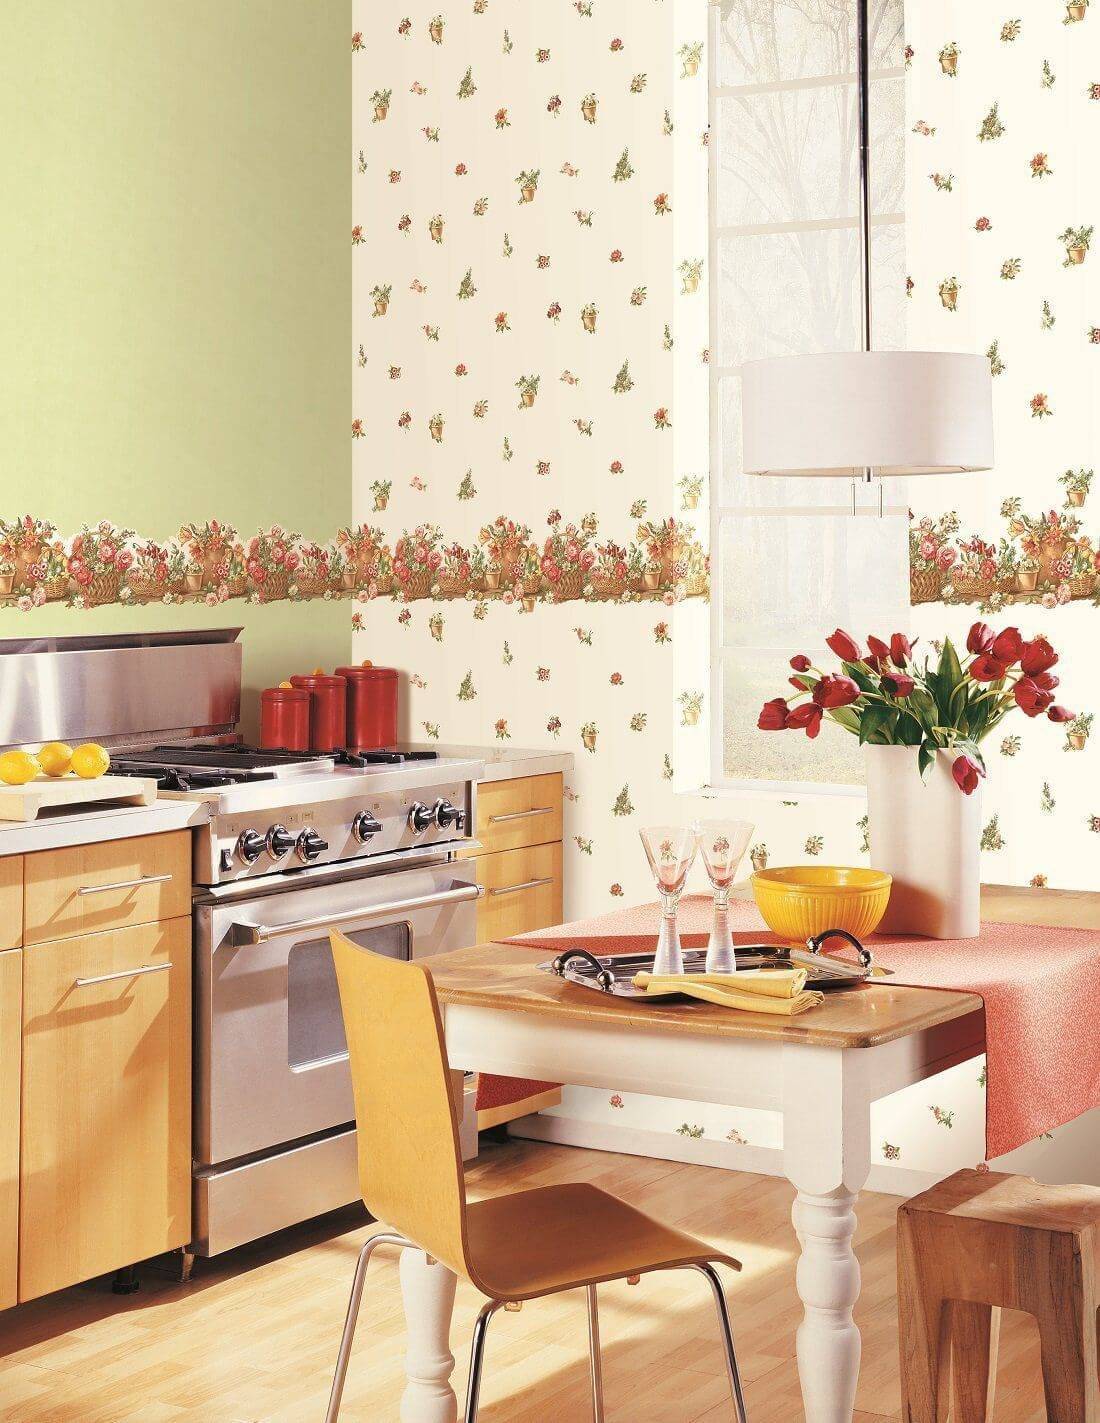 Как поклеить обои на кухне правильно: фото, дизайн – на краску, одну стену и в маленькой, и можно ли сделать красиво, интересно и оригинально самим, своими руками?